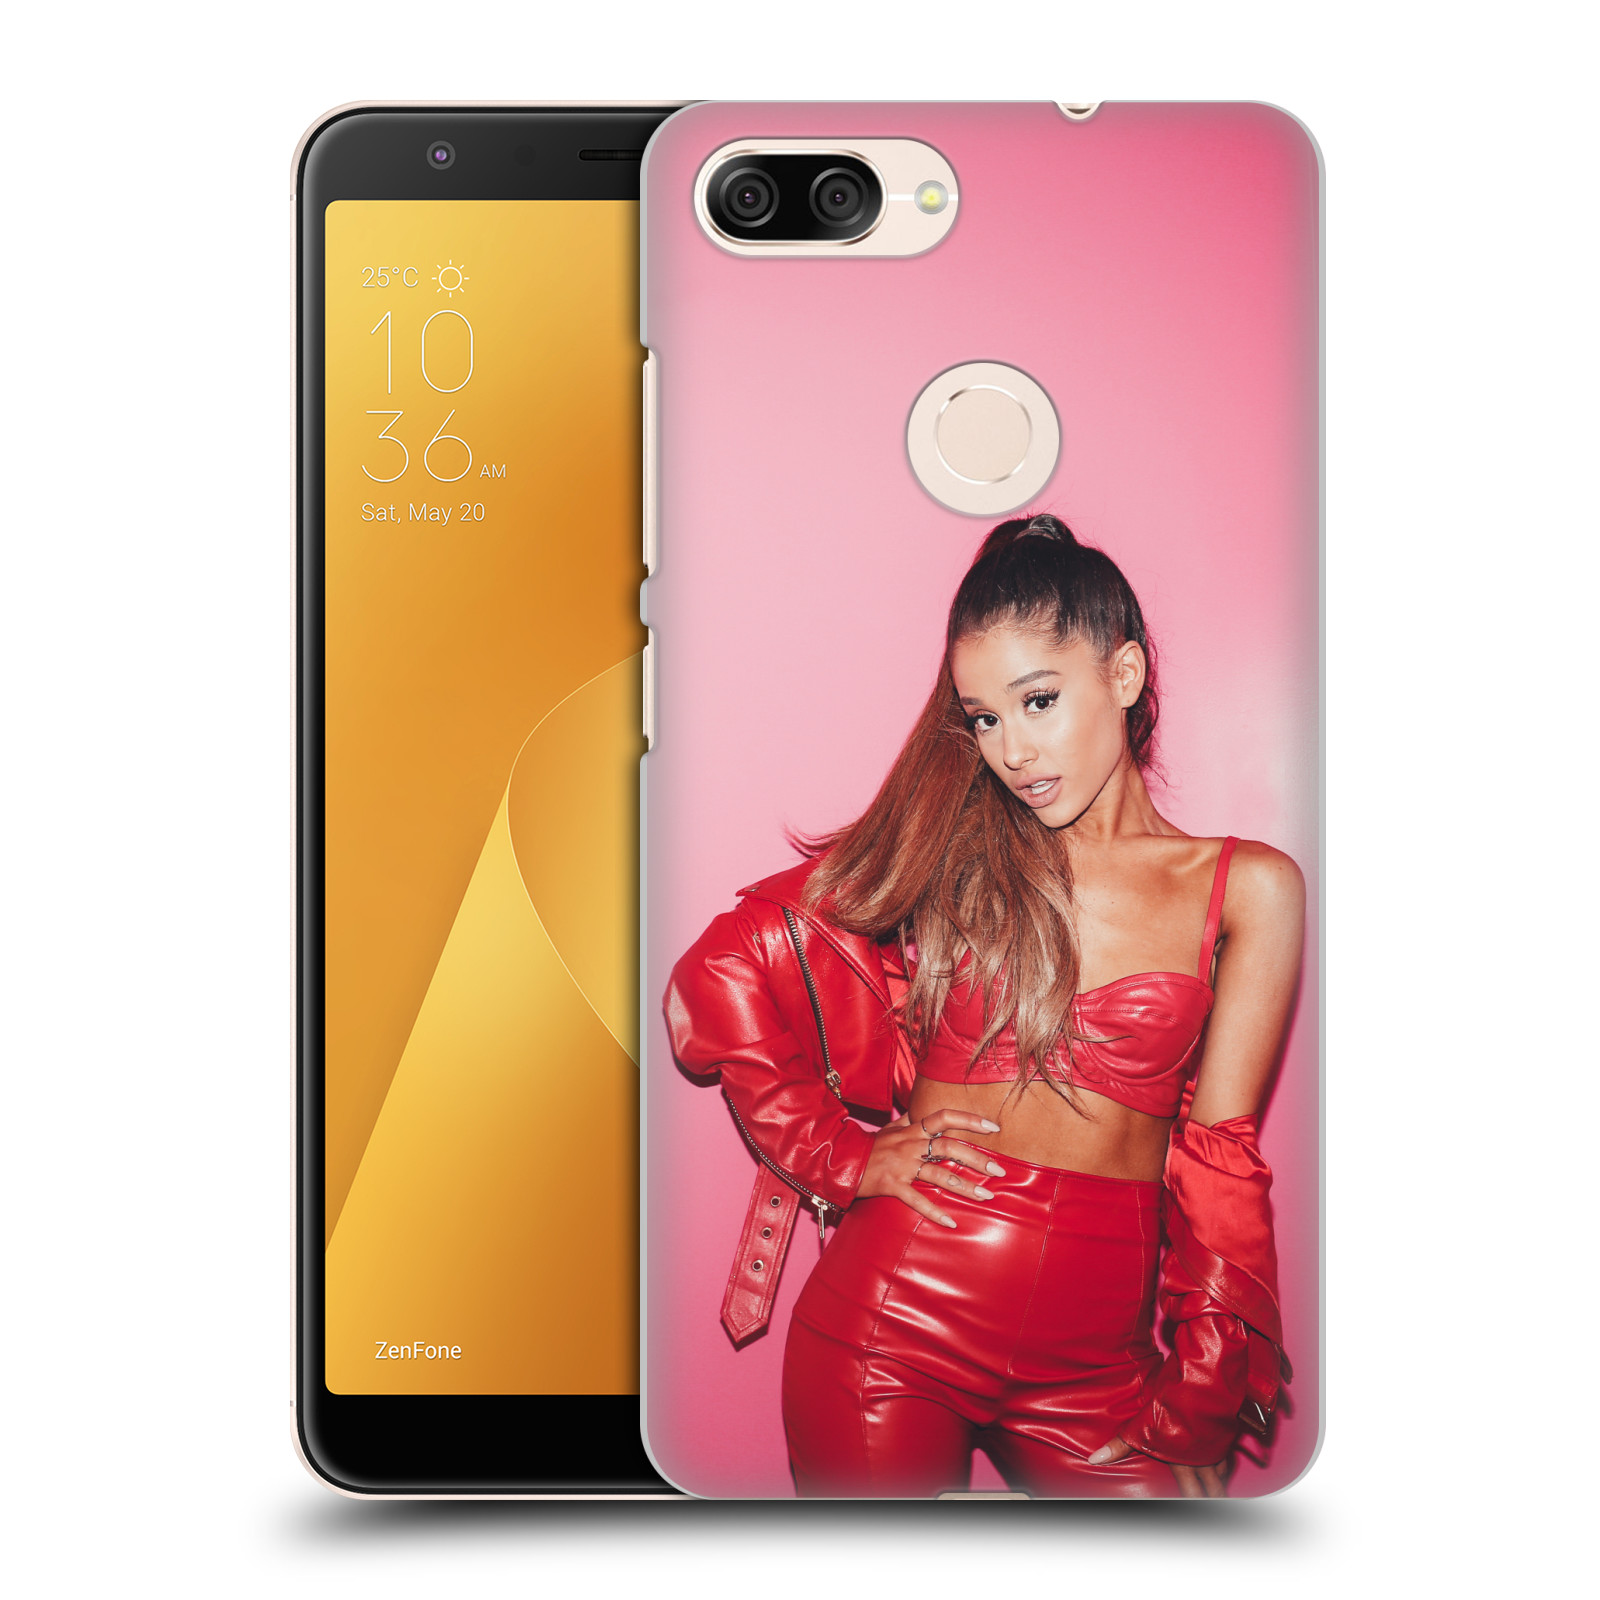 Zadní obal pro mobil Asus Zenfone Max Plus (M1) - HEAD CASE - Zpěvačka Ariana Grande růžové pozadí